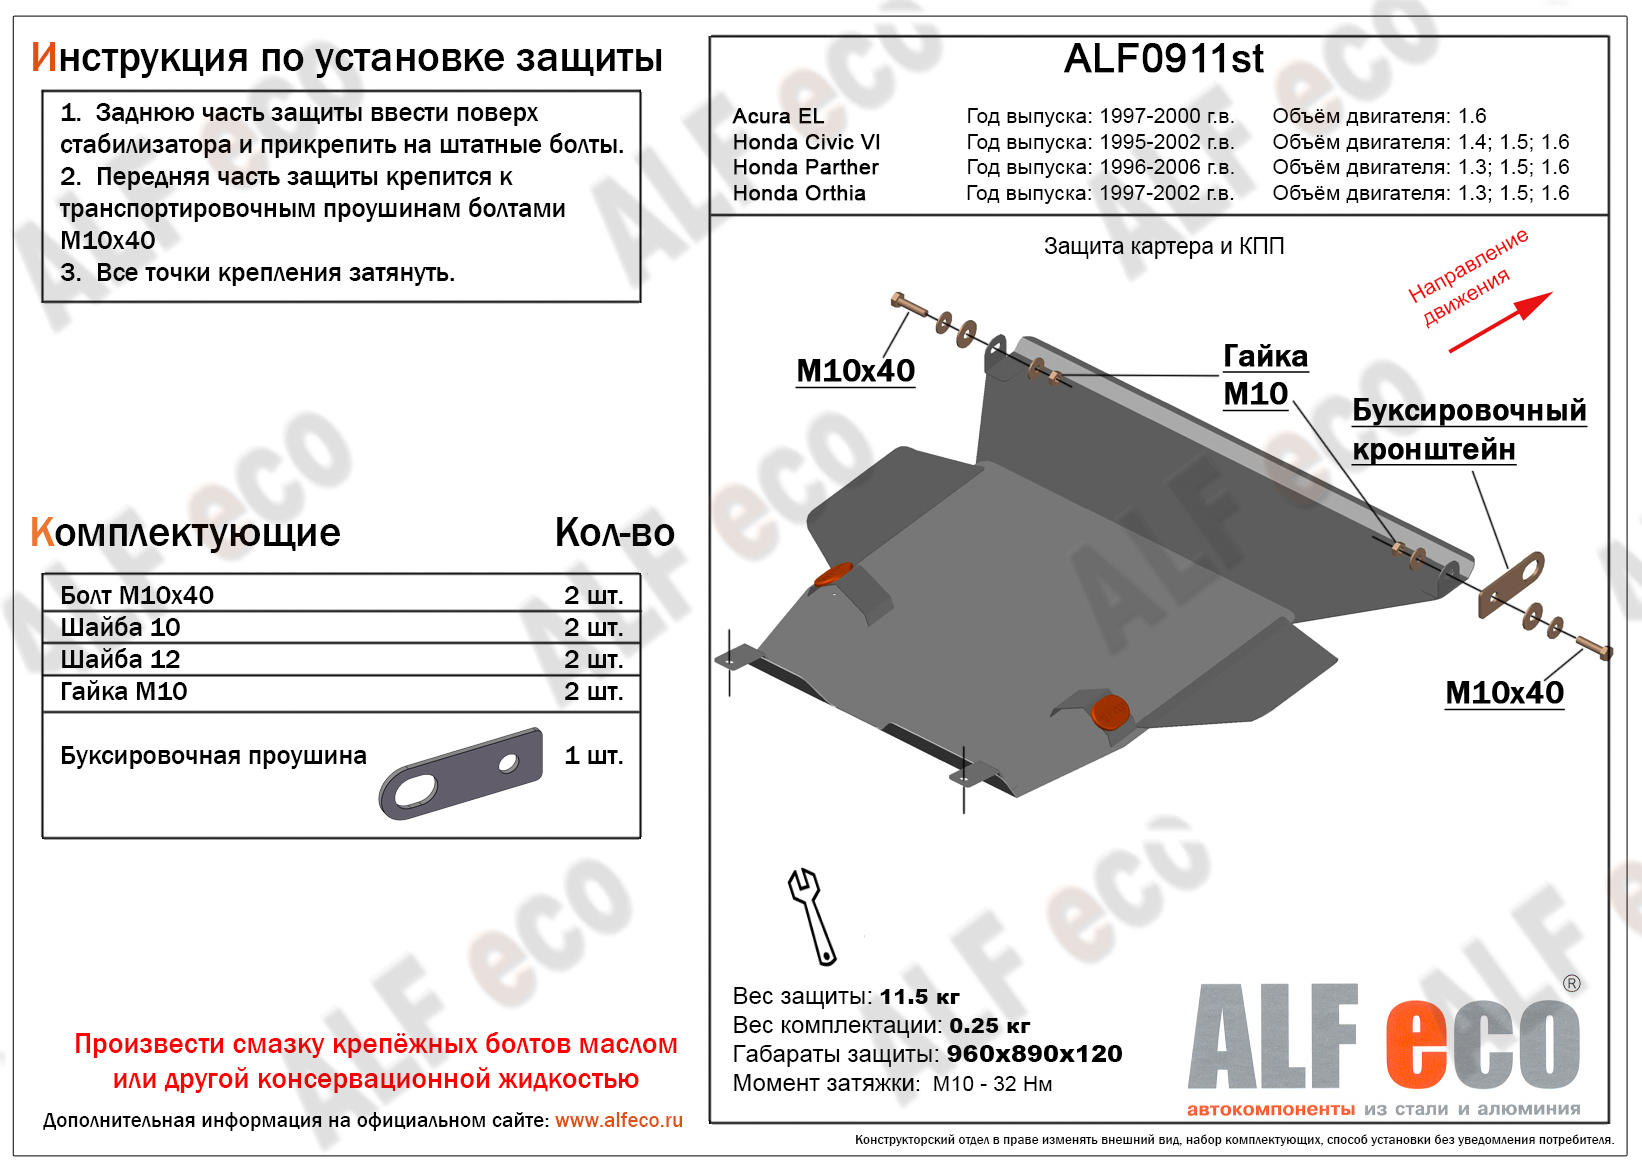 Защита  картера и кпп для Acura EL 1997-2000  V-1,6 , ALFeco, алюминий 4мм, арт. ALF0911al